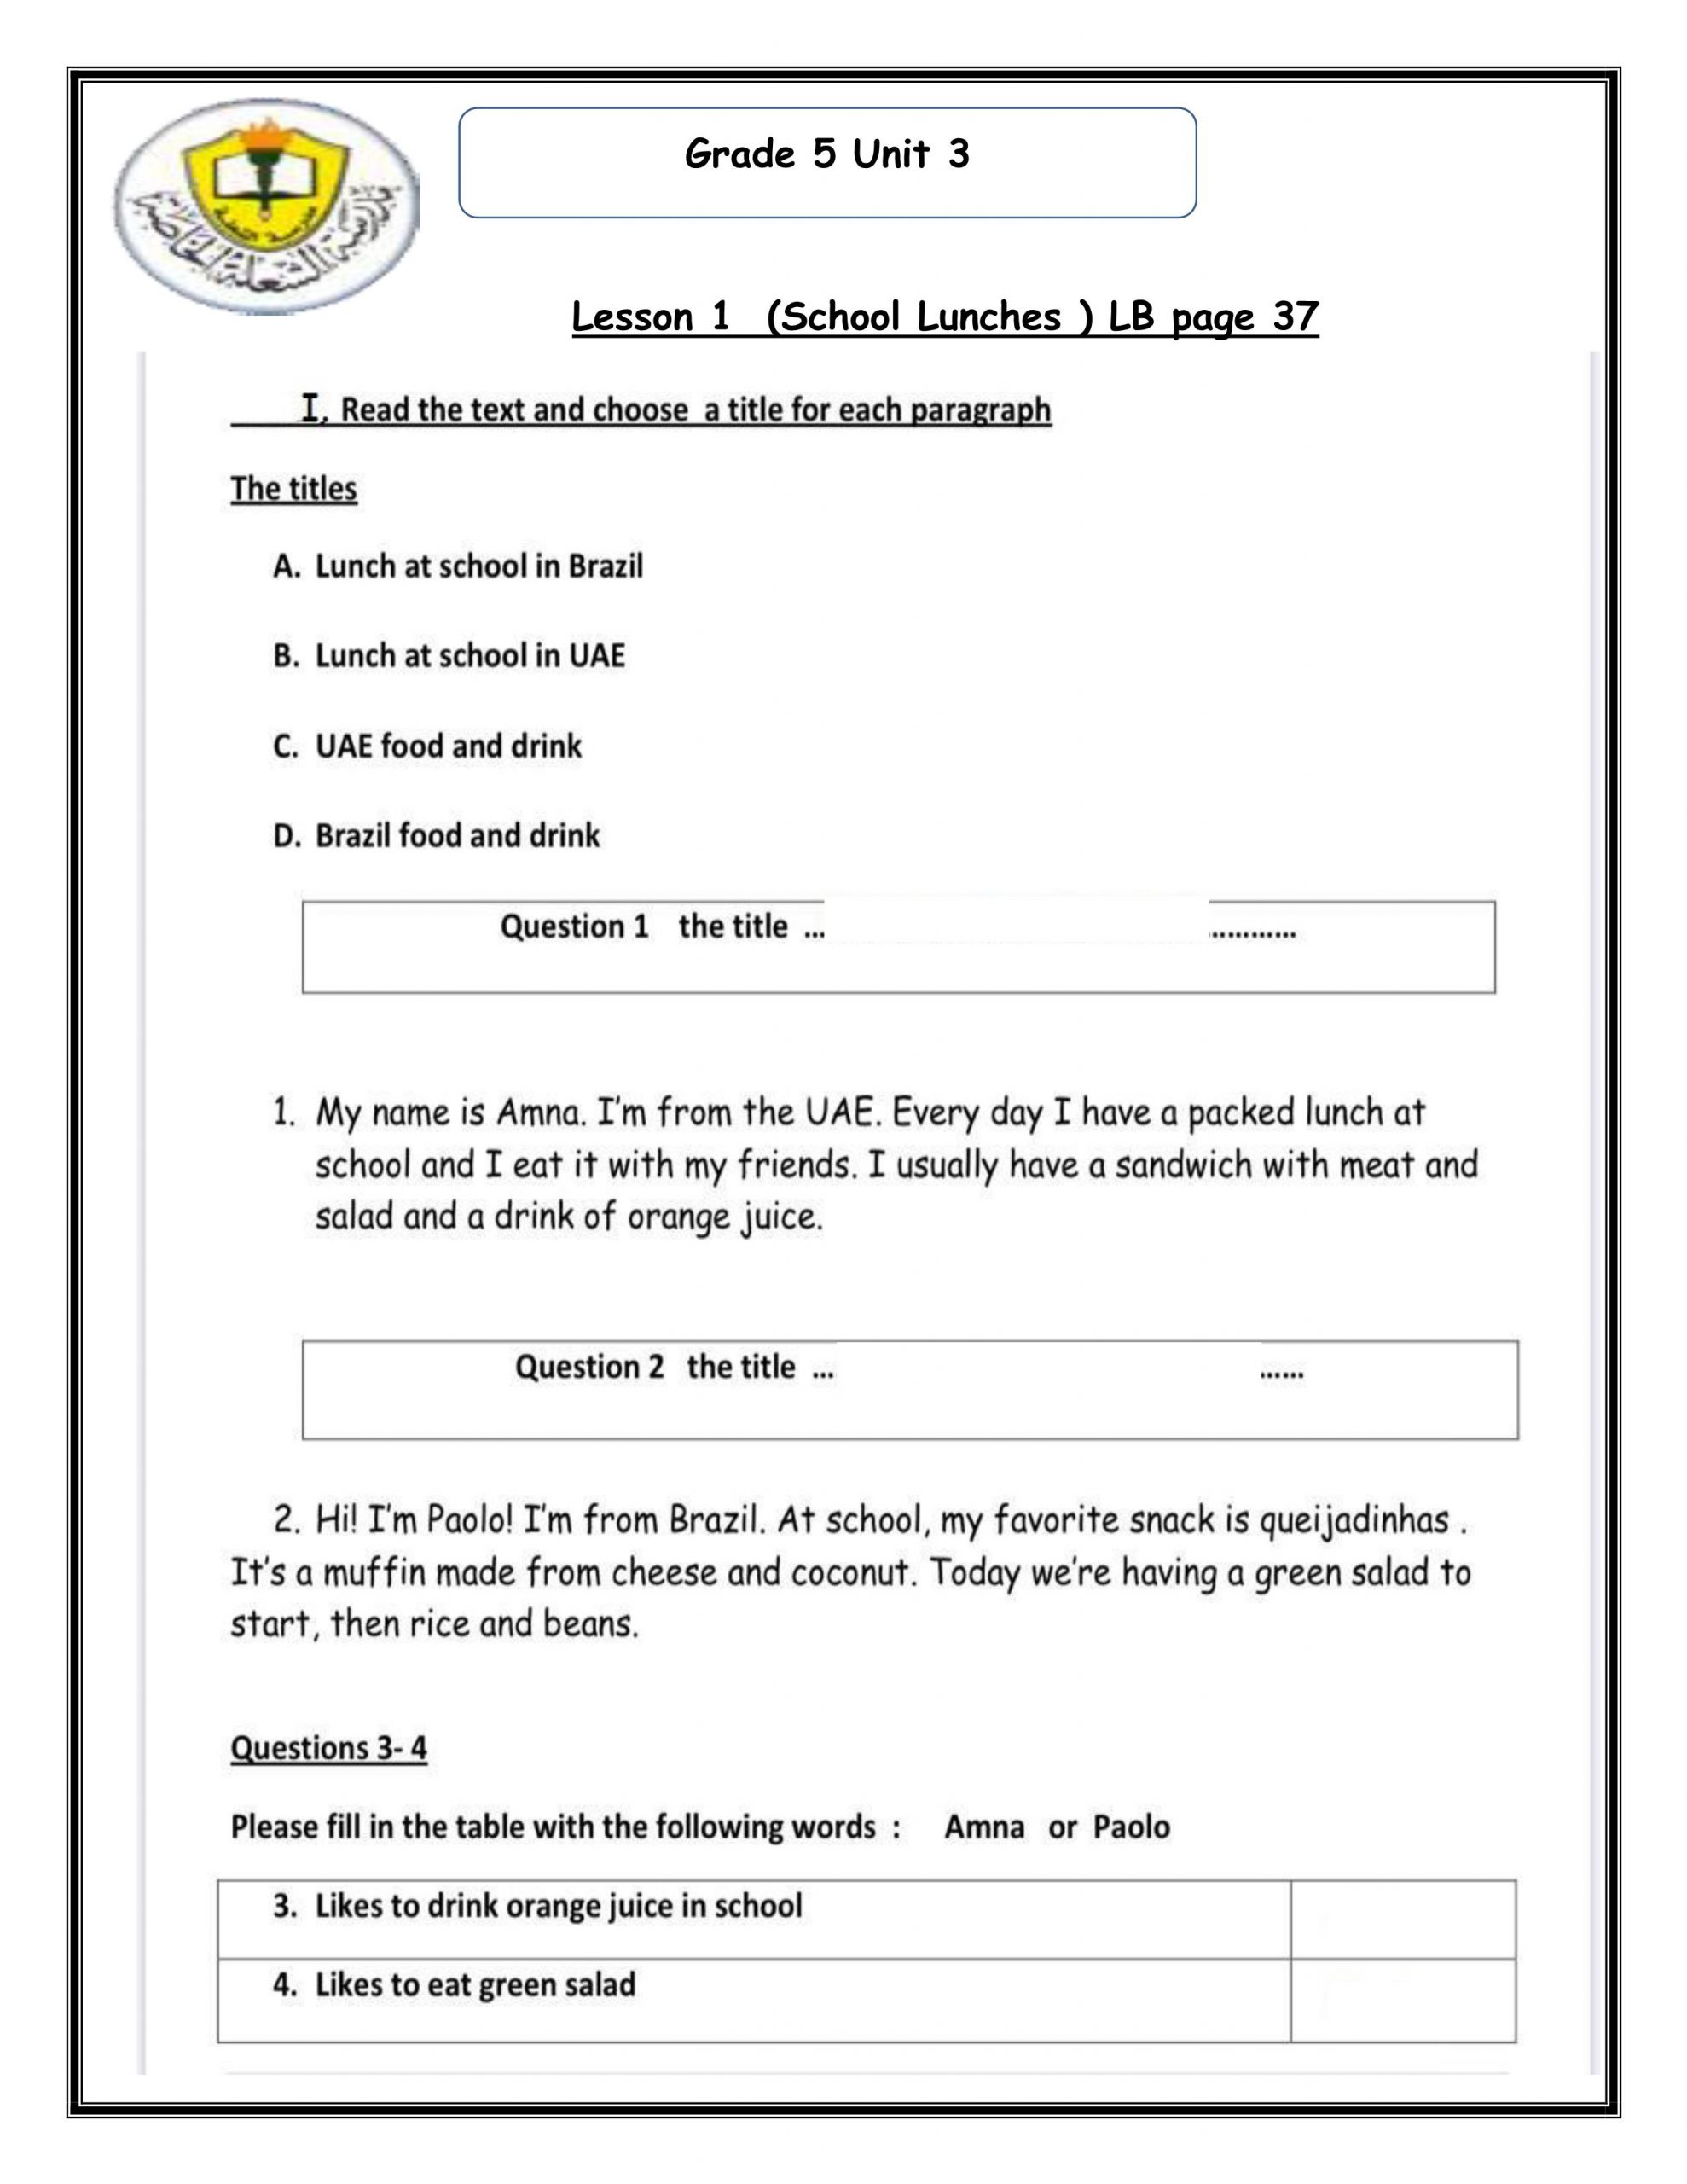 اوراق عمل مراجعة Unit 3 للصف الخامس مادة اللغة الانجليزية